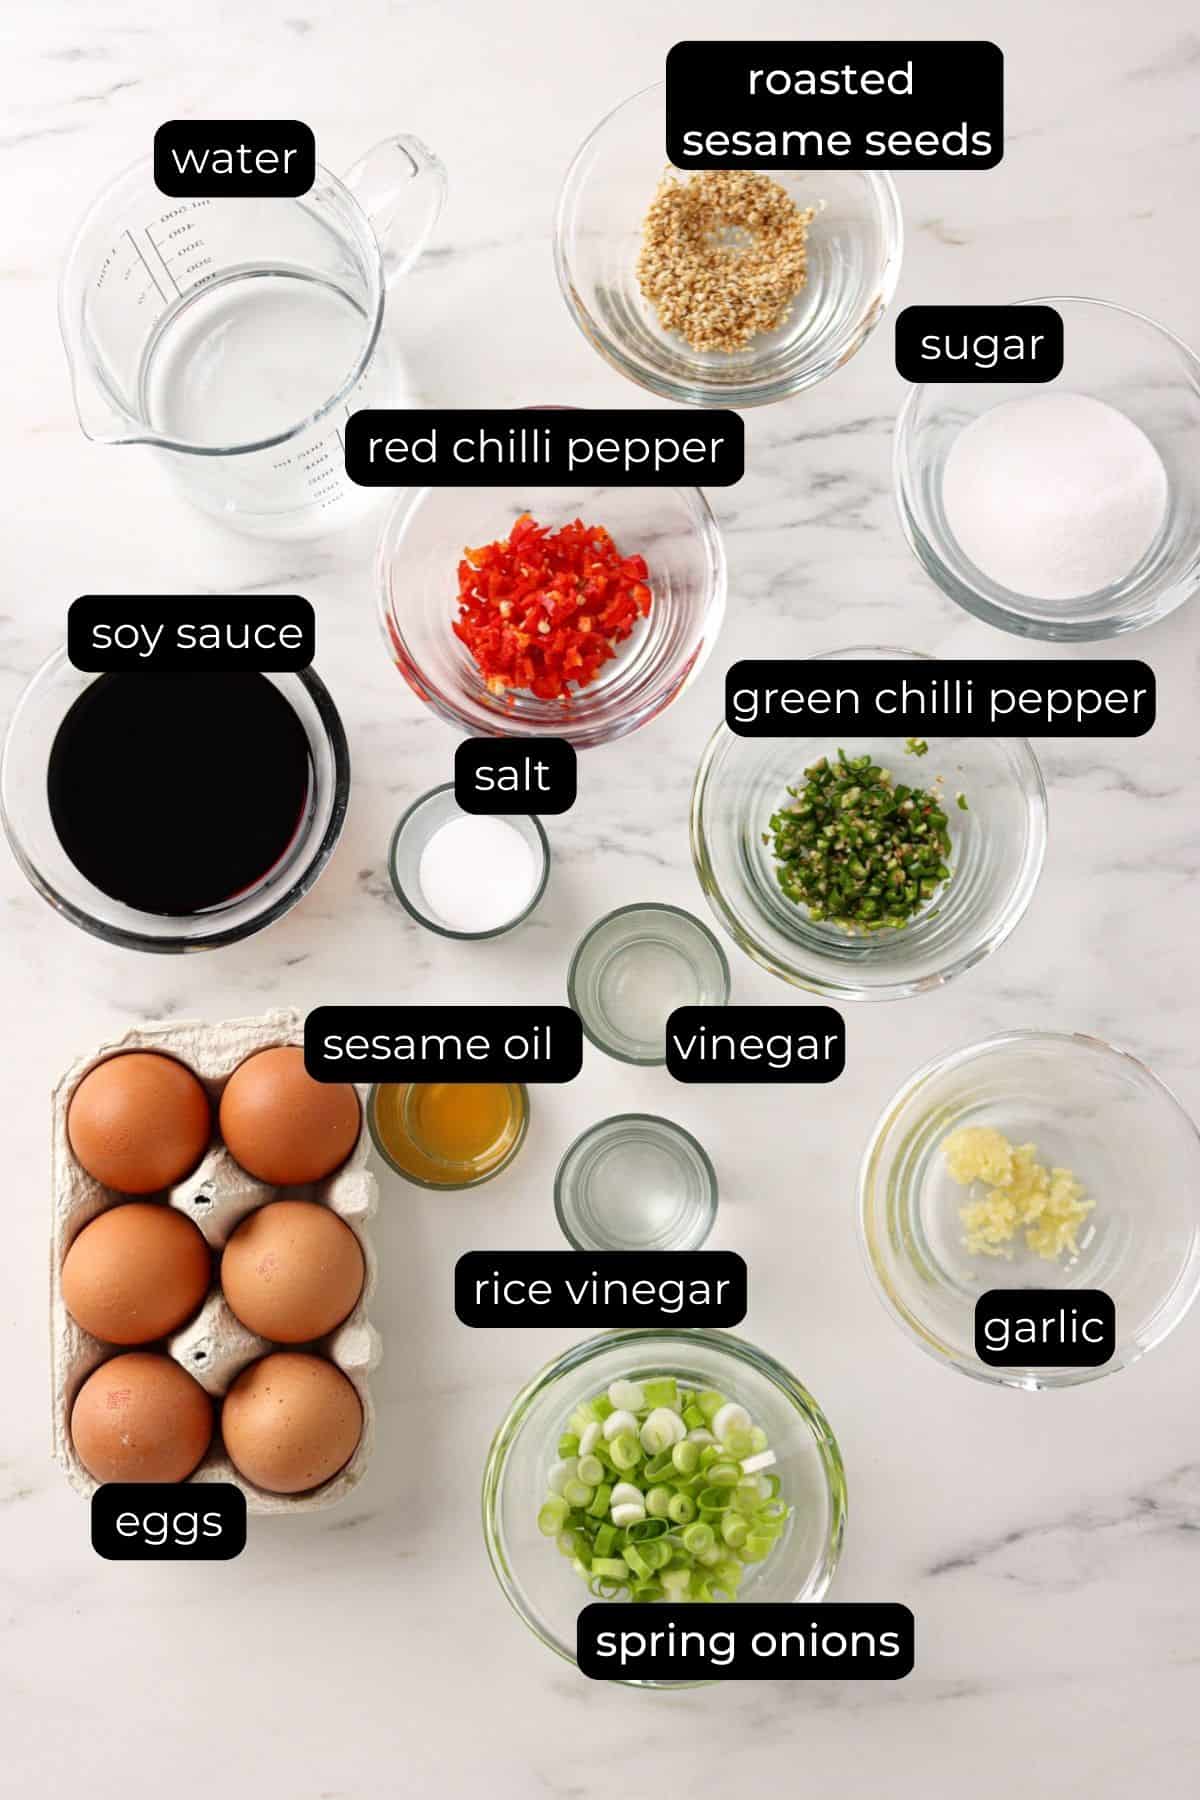 mayak eggs ingredients